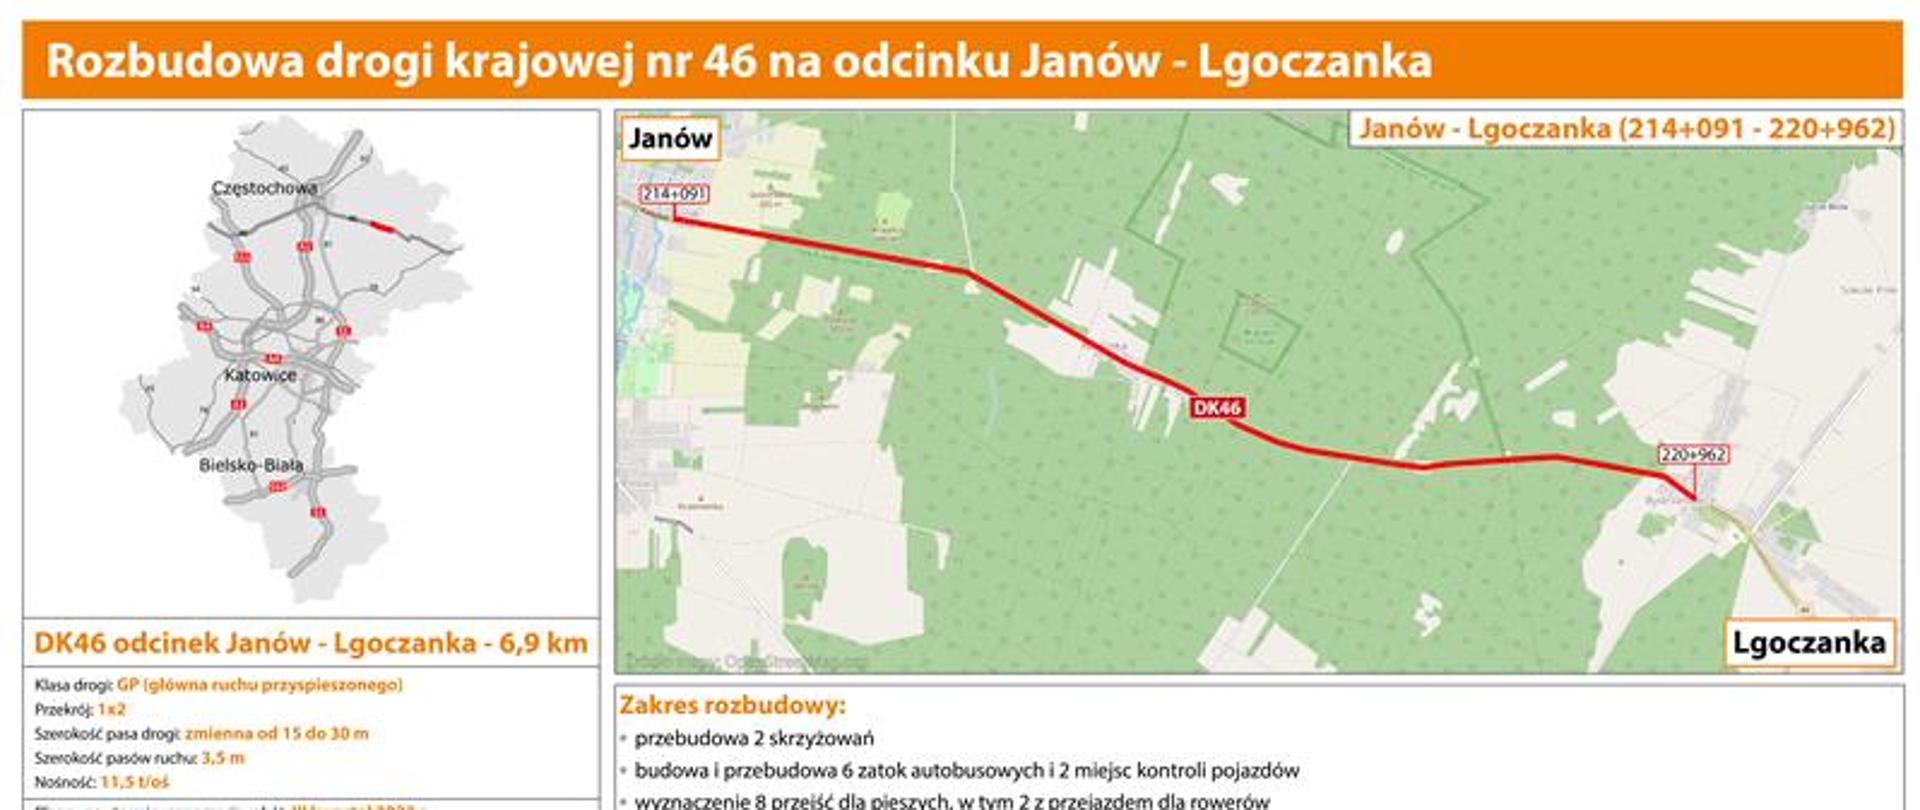 Orientacyjny przebieg rozbudowy DK46 na odcinku Janów - Lgoczanka